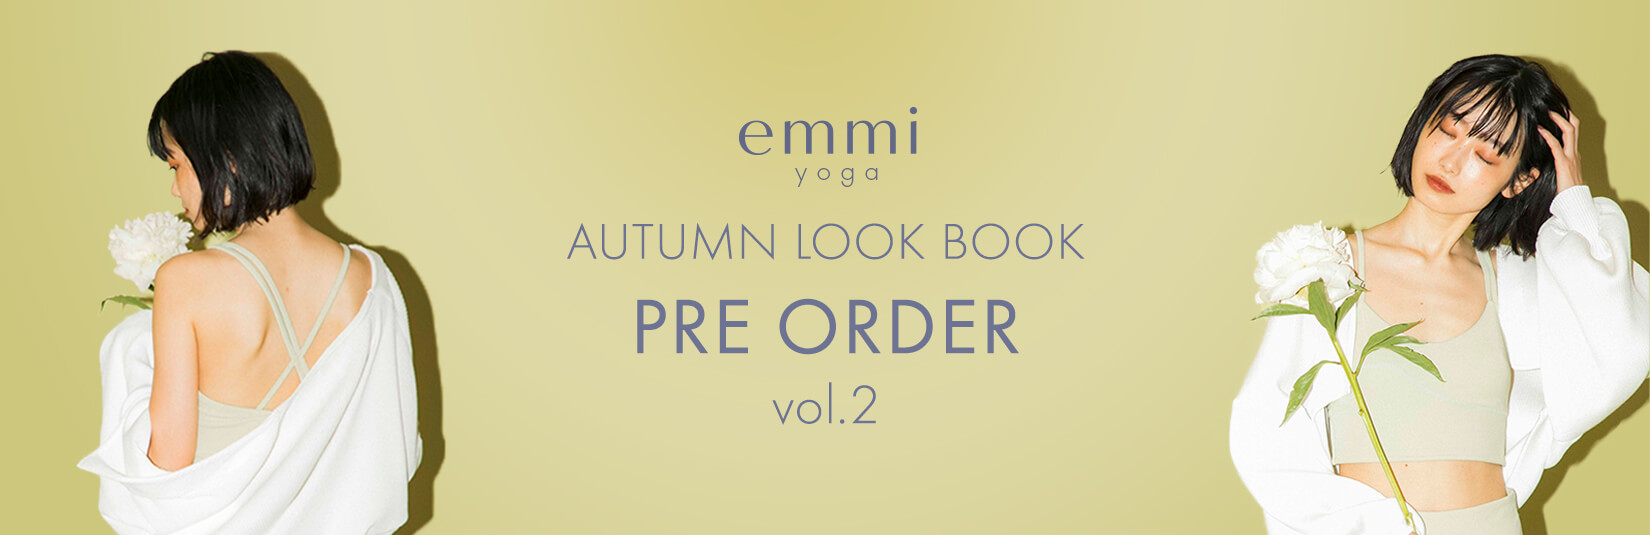 emmi yoga AUTUMN LOOK BOOK PRE ORDER vol.2